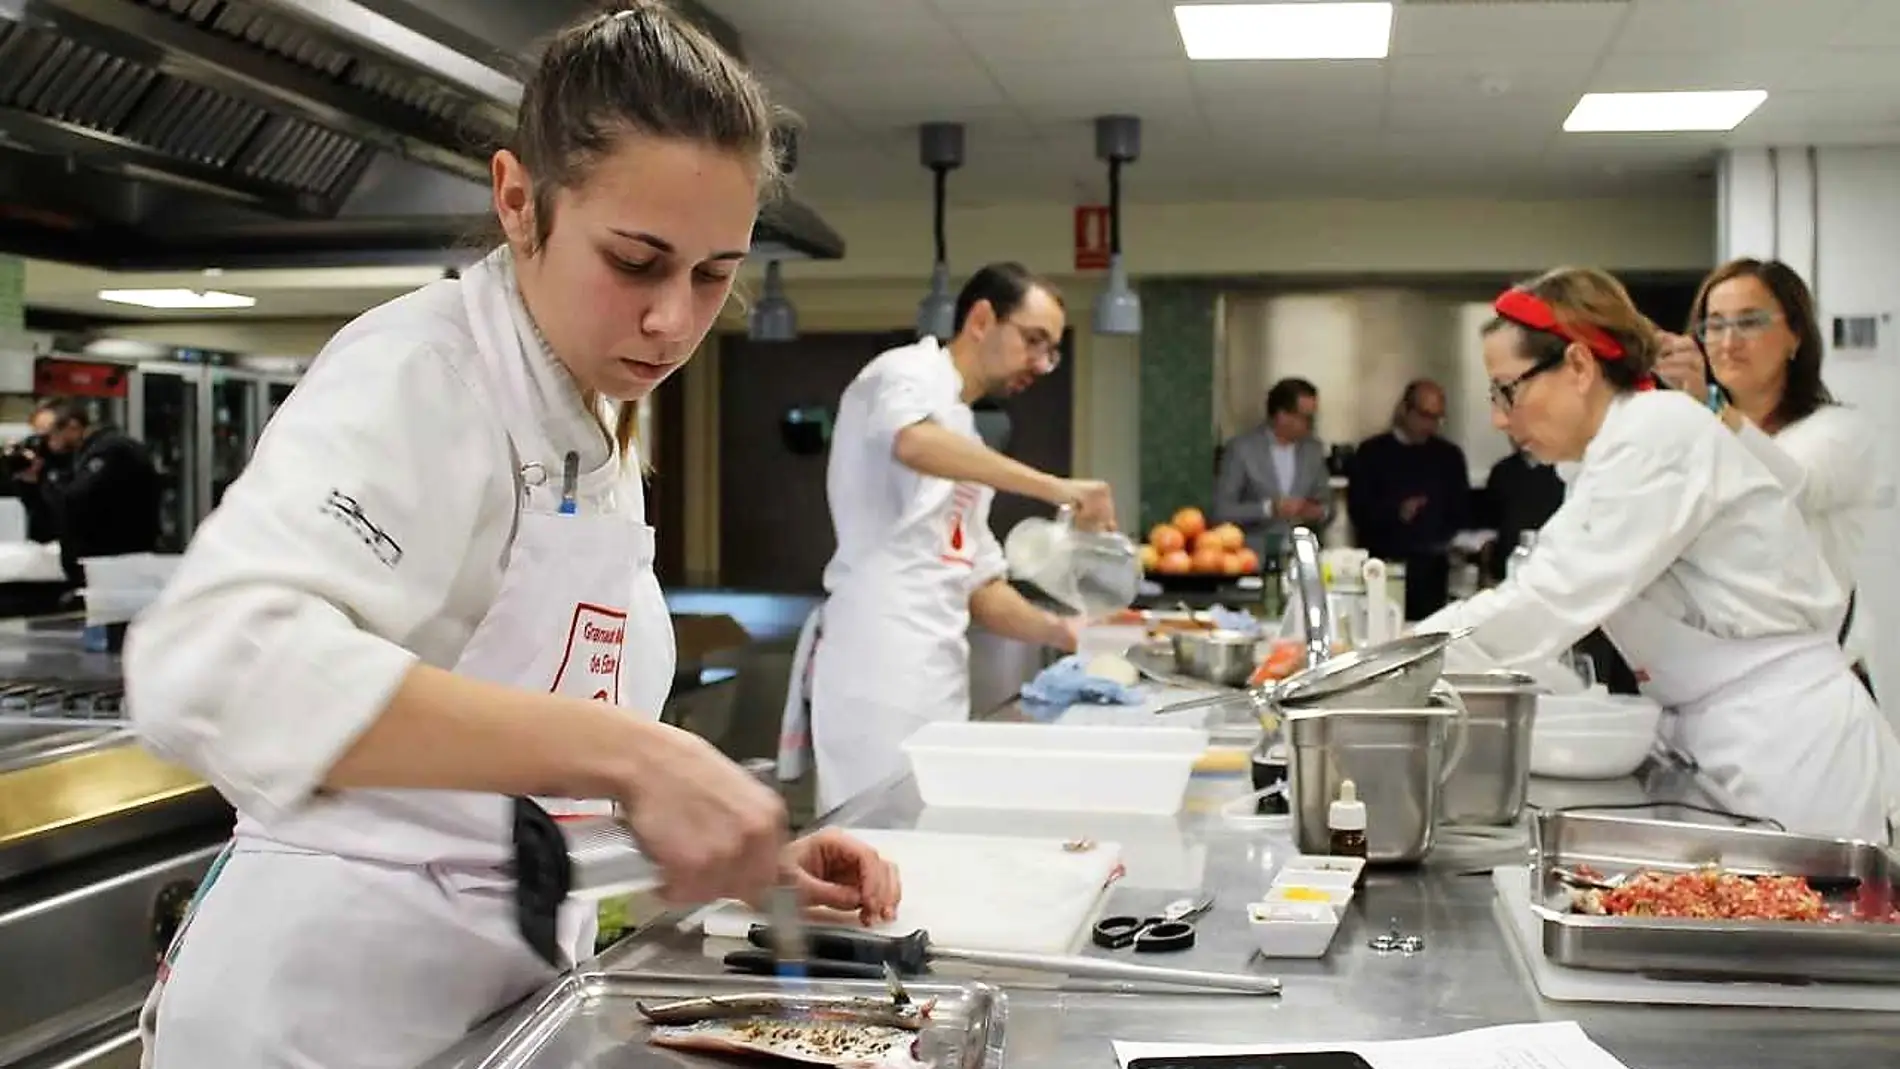  Cristina Gómez, ganadora del VII Concurso de Cocina Creativa con Granada mollar de Elche